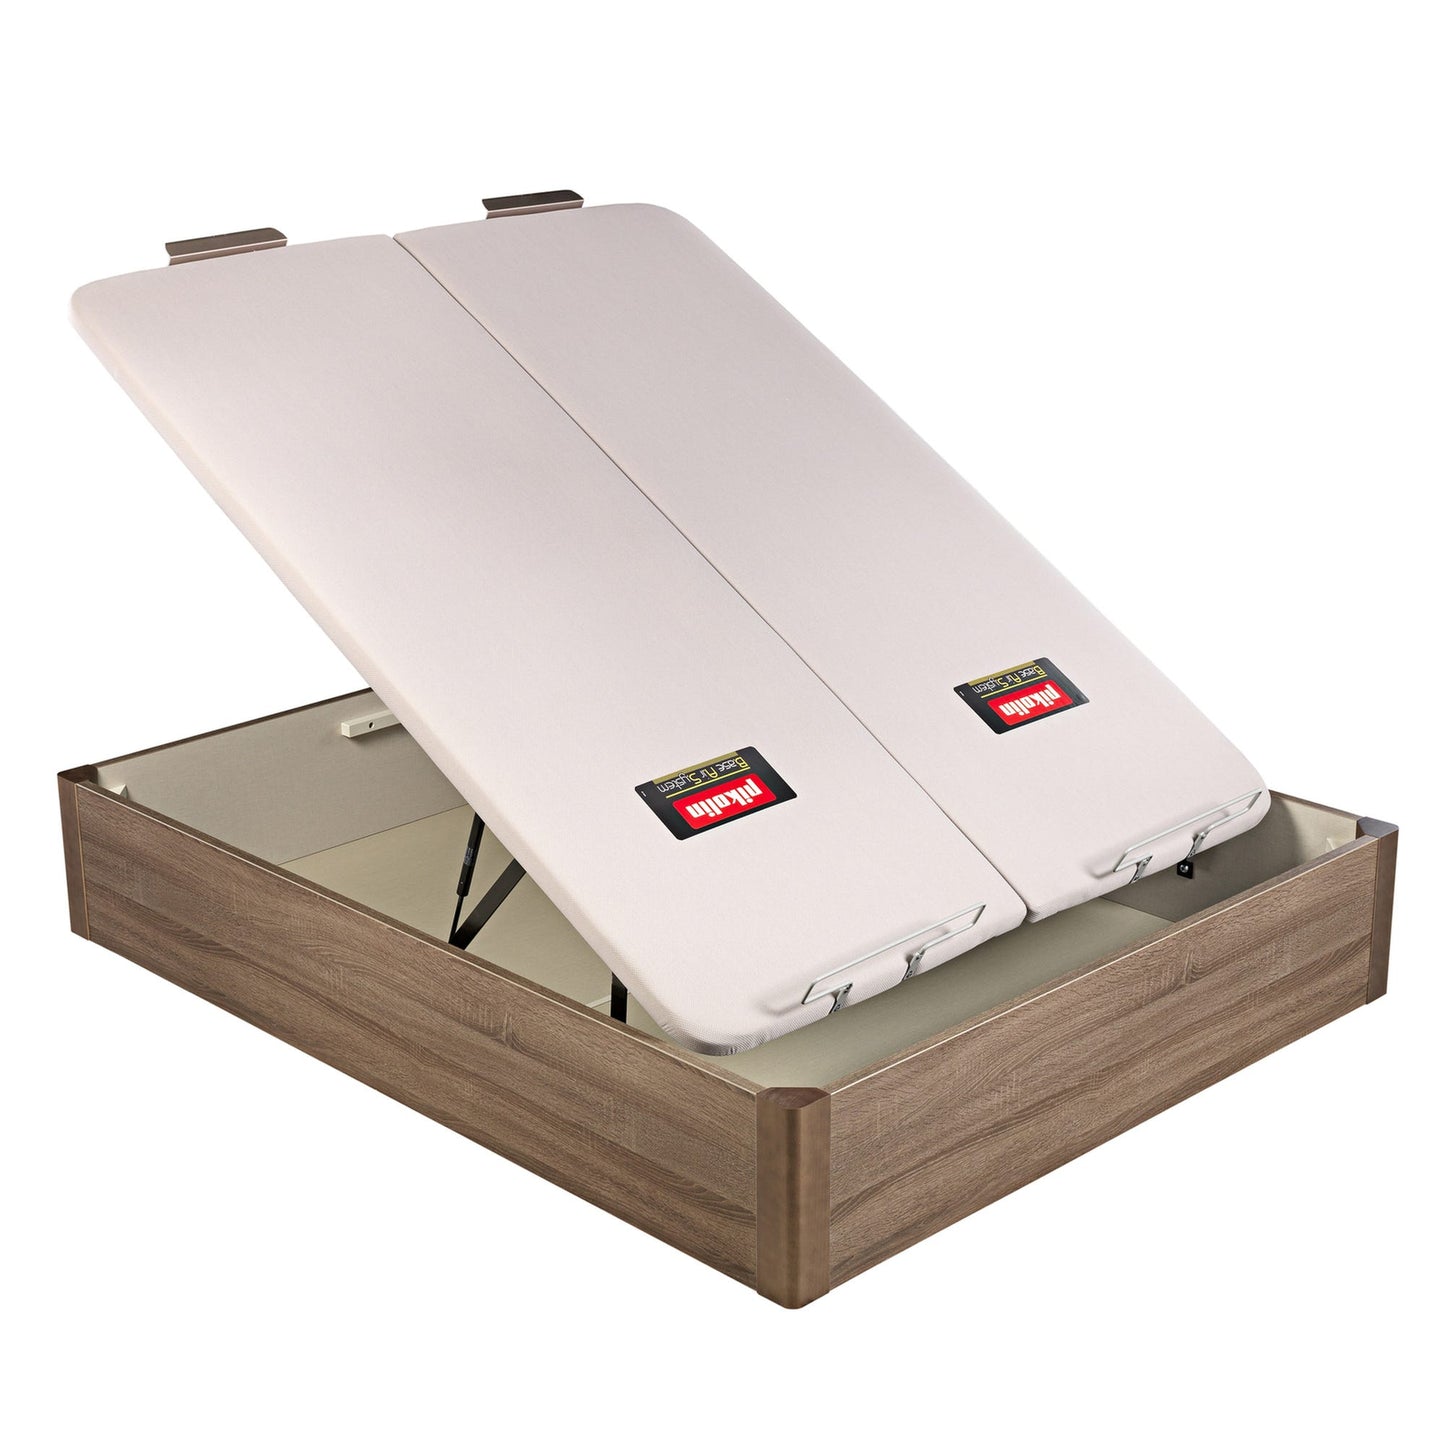 Canapé abatible de madera de tapa doble de color roble - DESIGN - 160x200